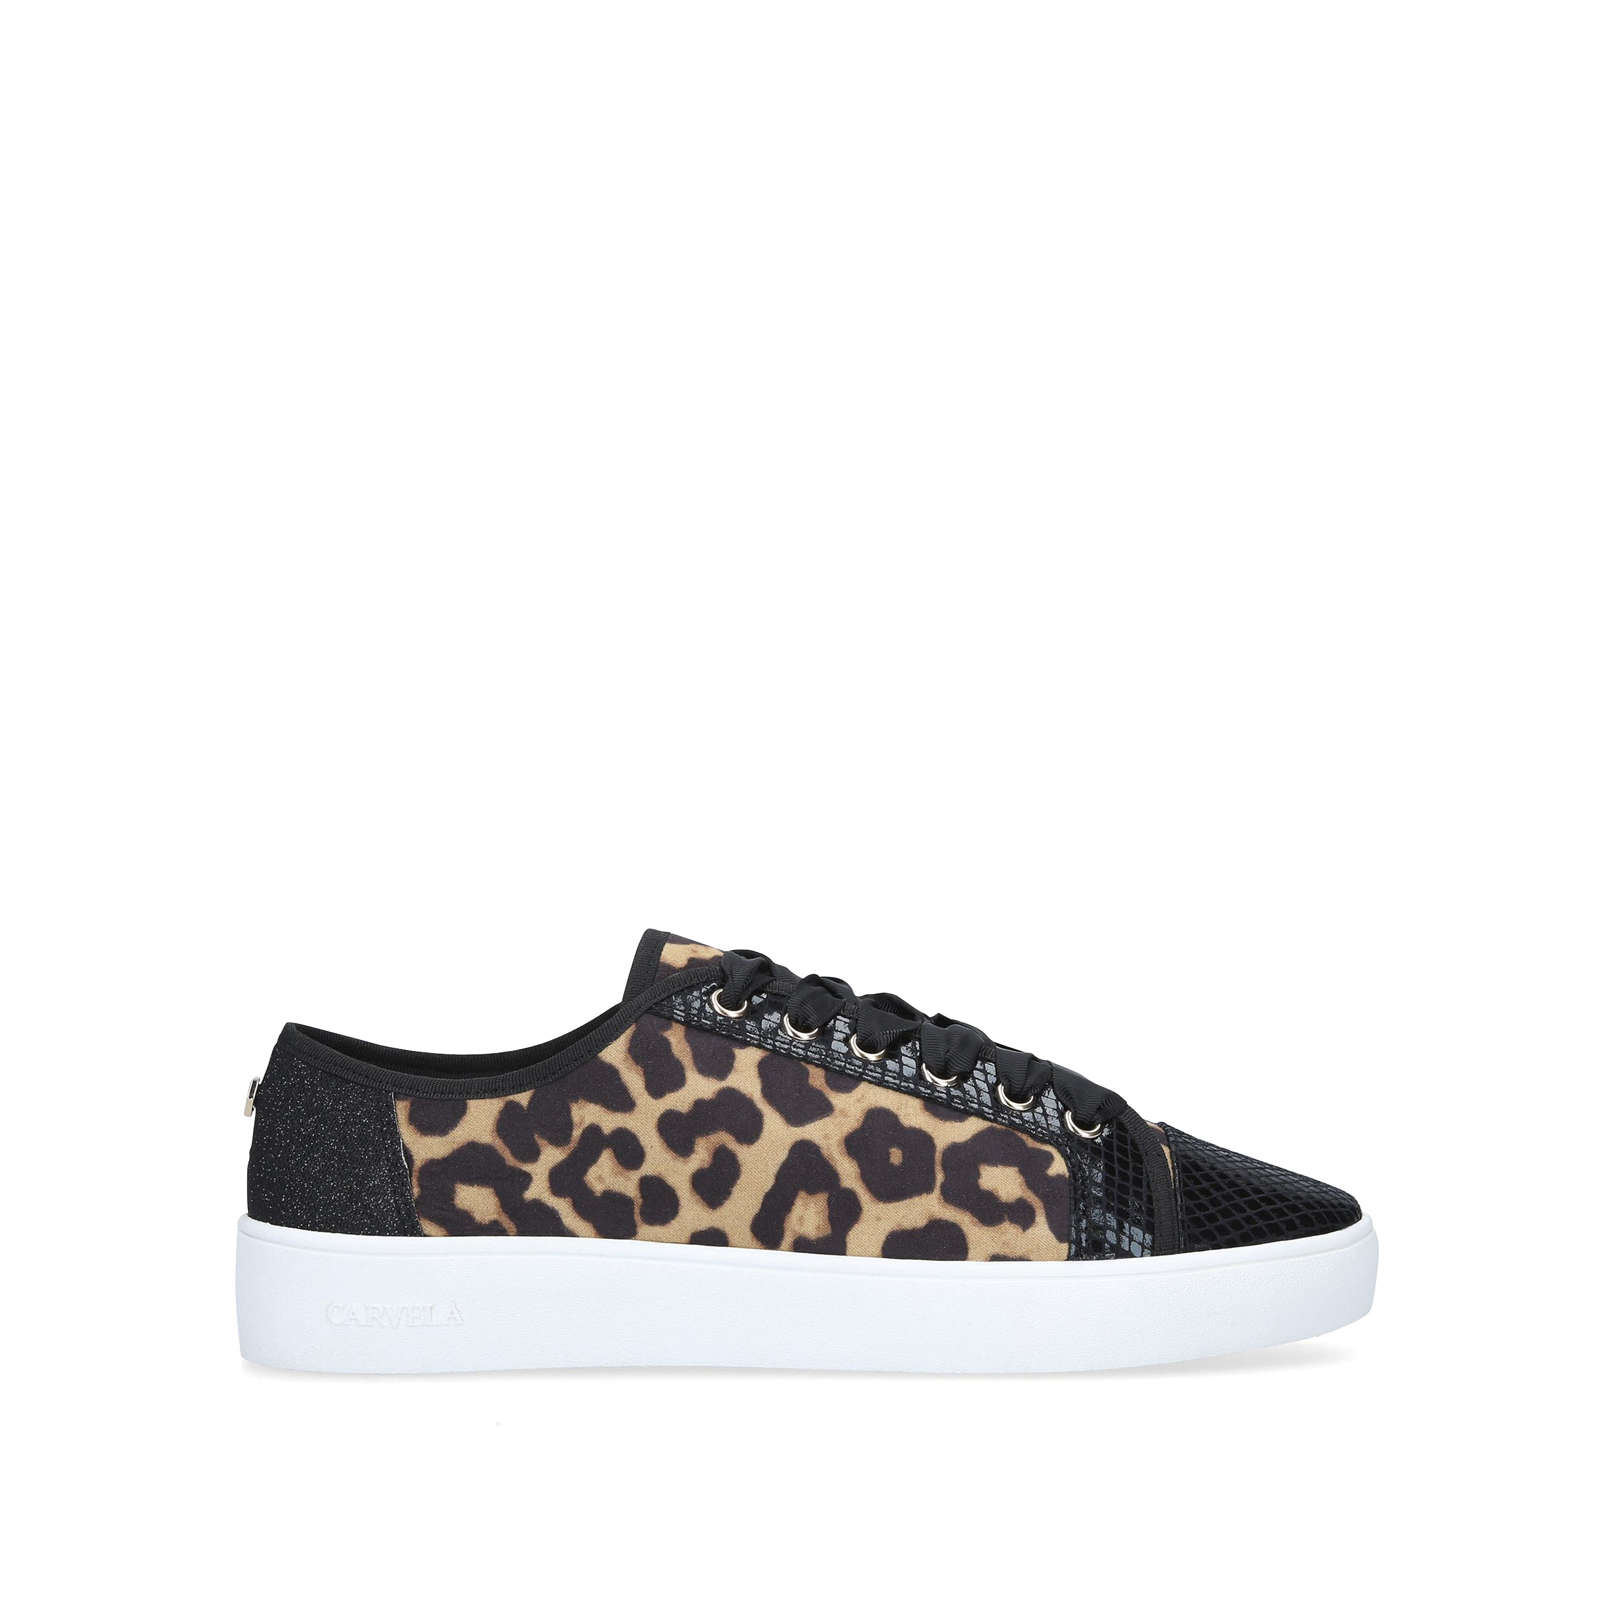 kg leopard print shoes